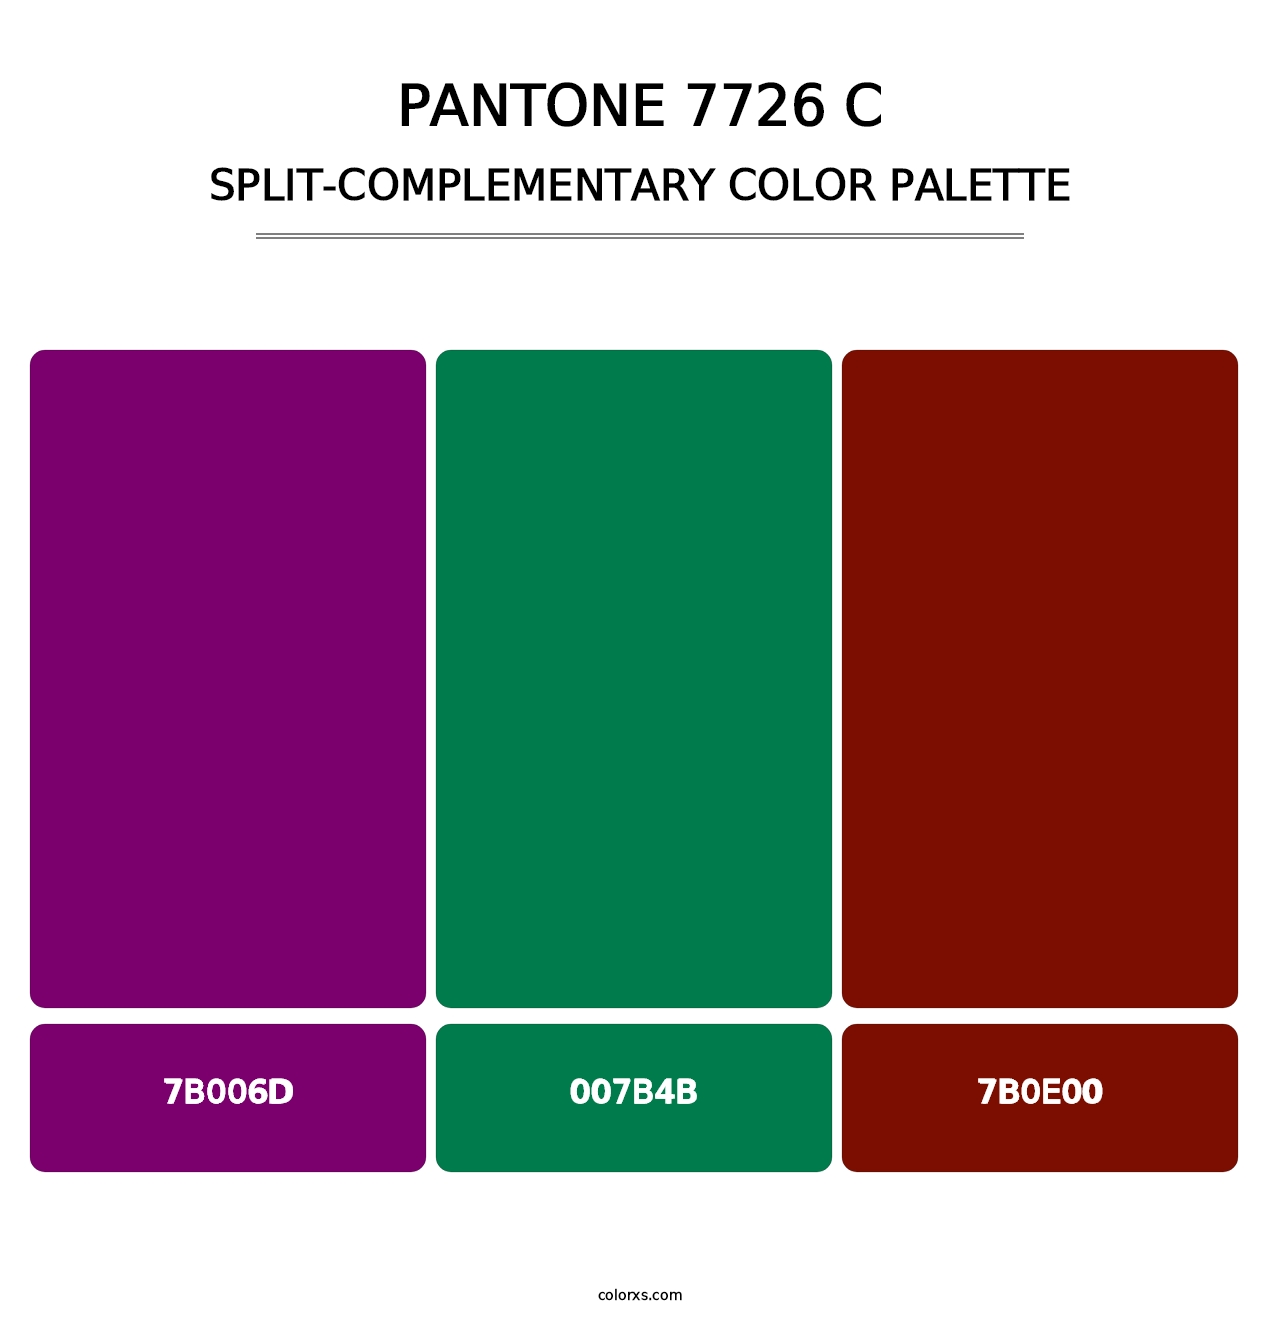 PANTONE 7726 C - Split-Complementary Color Palette